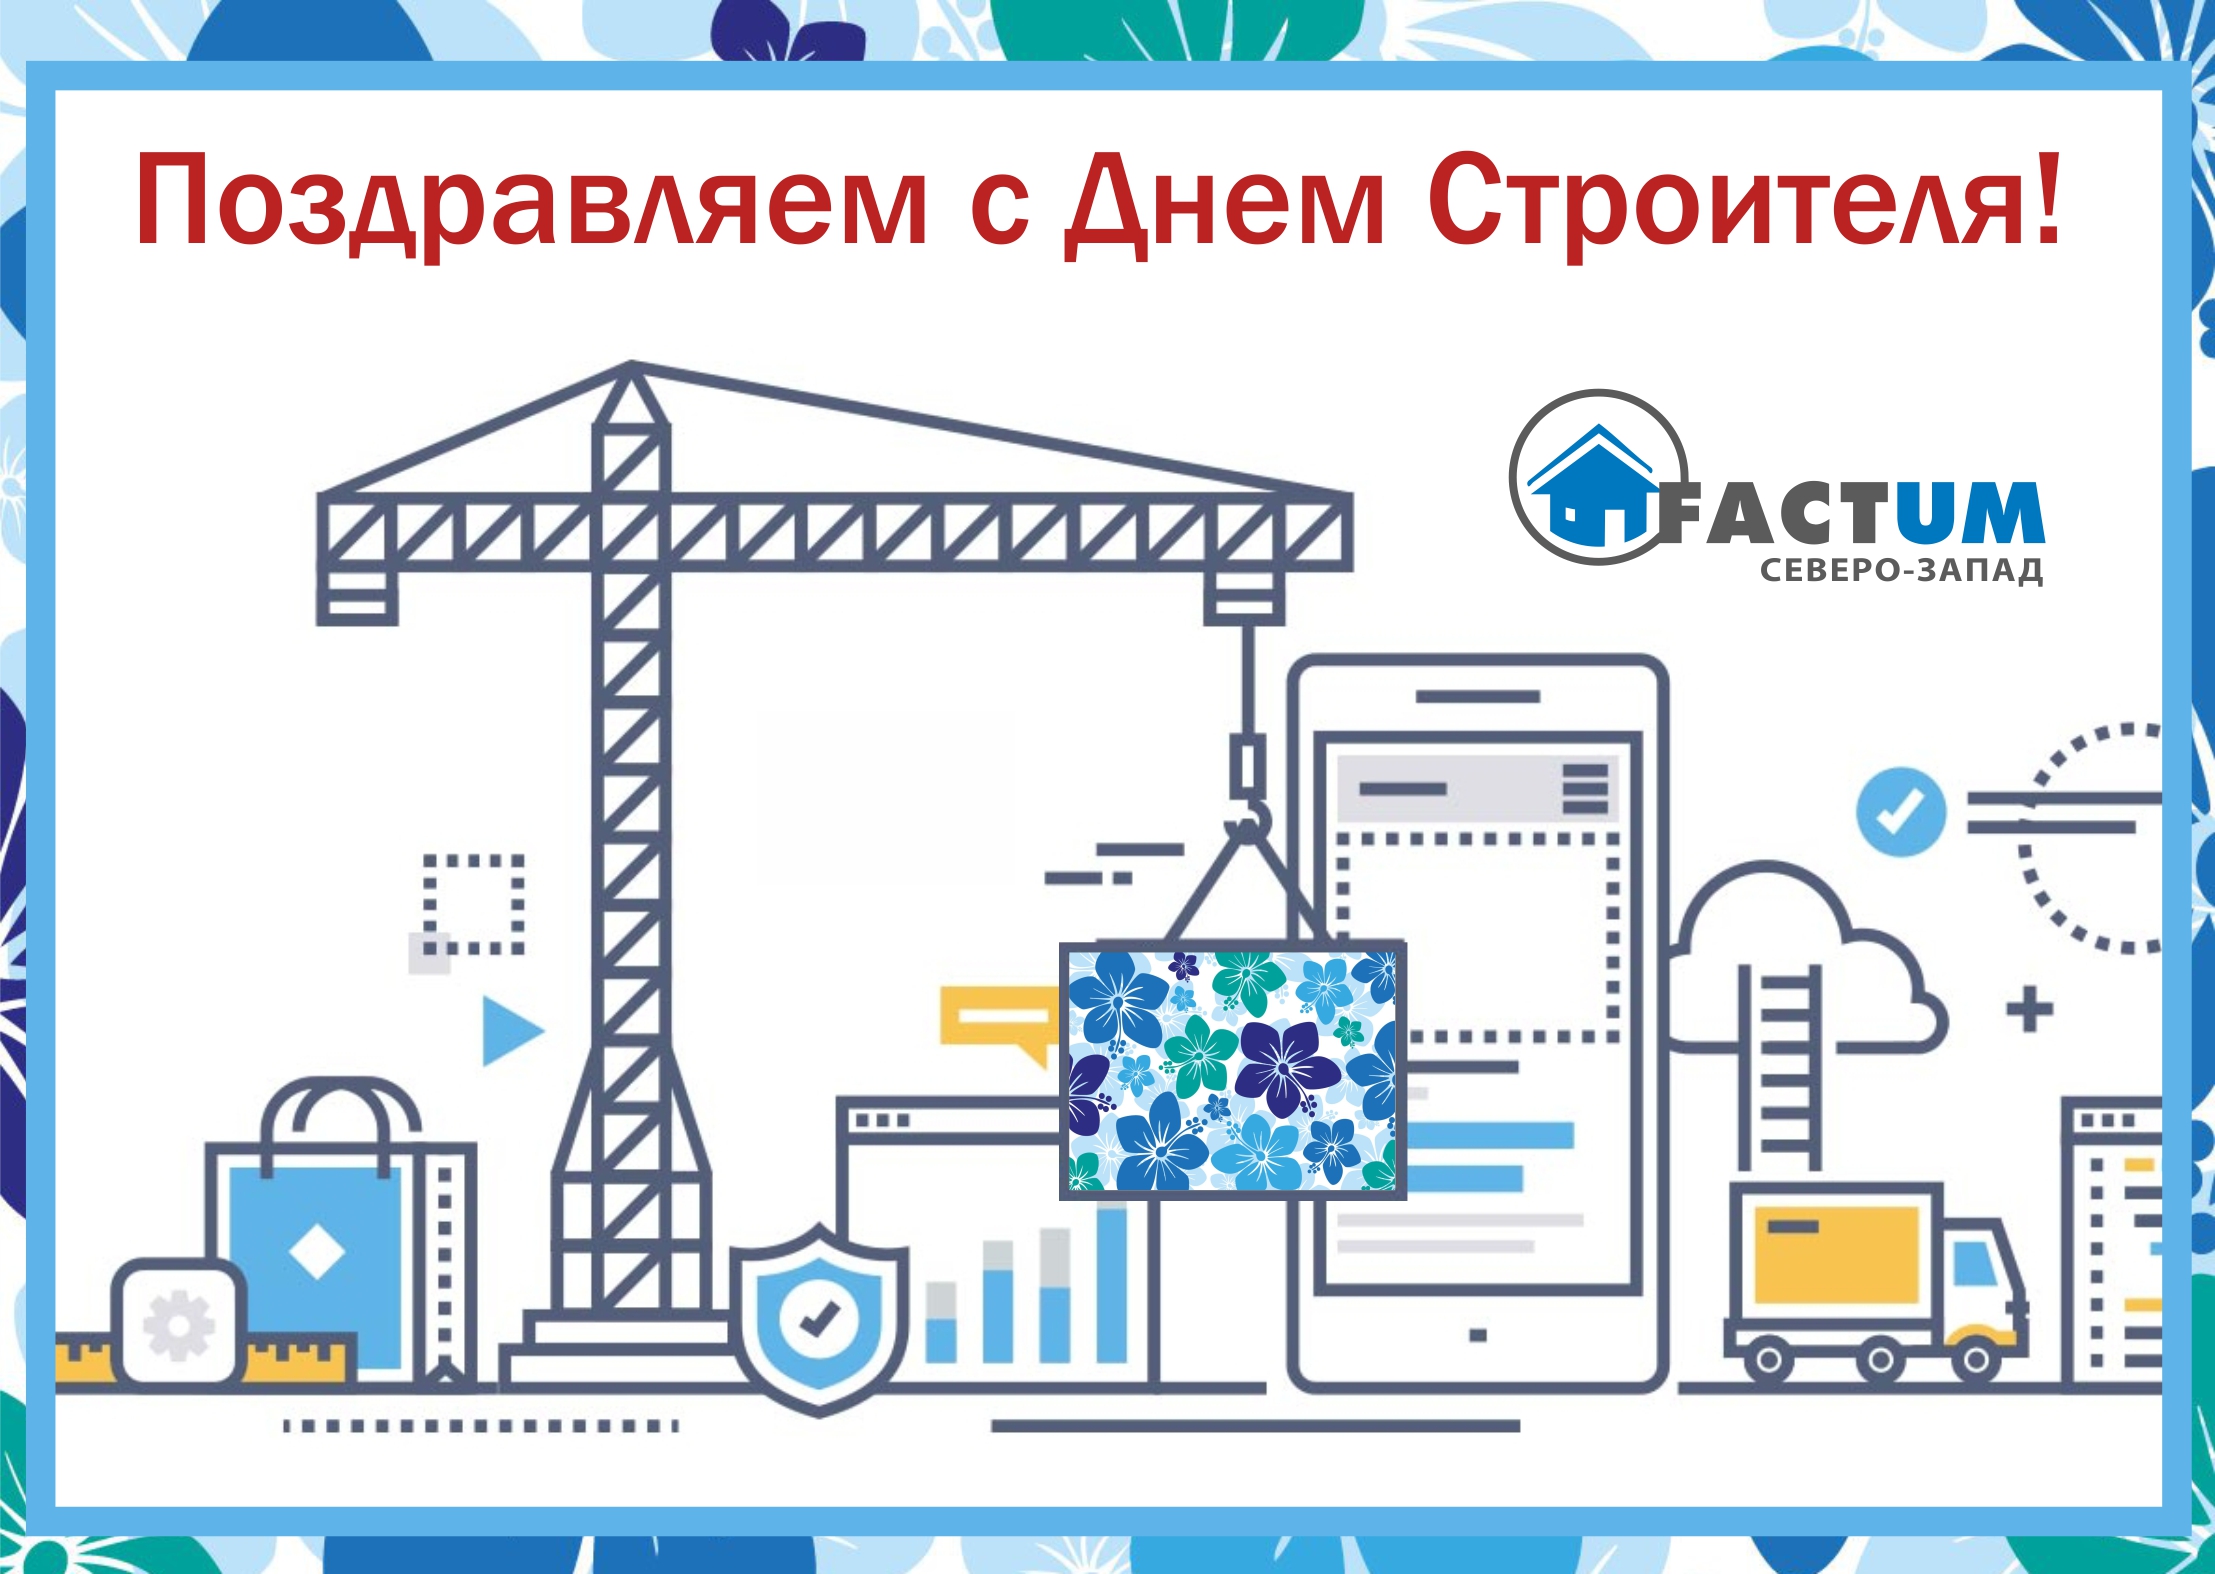 2 Компания «Фактум Северо-Запад», Санкт-Петербург | Технониколь